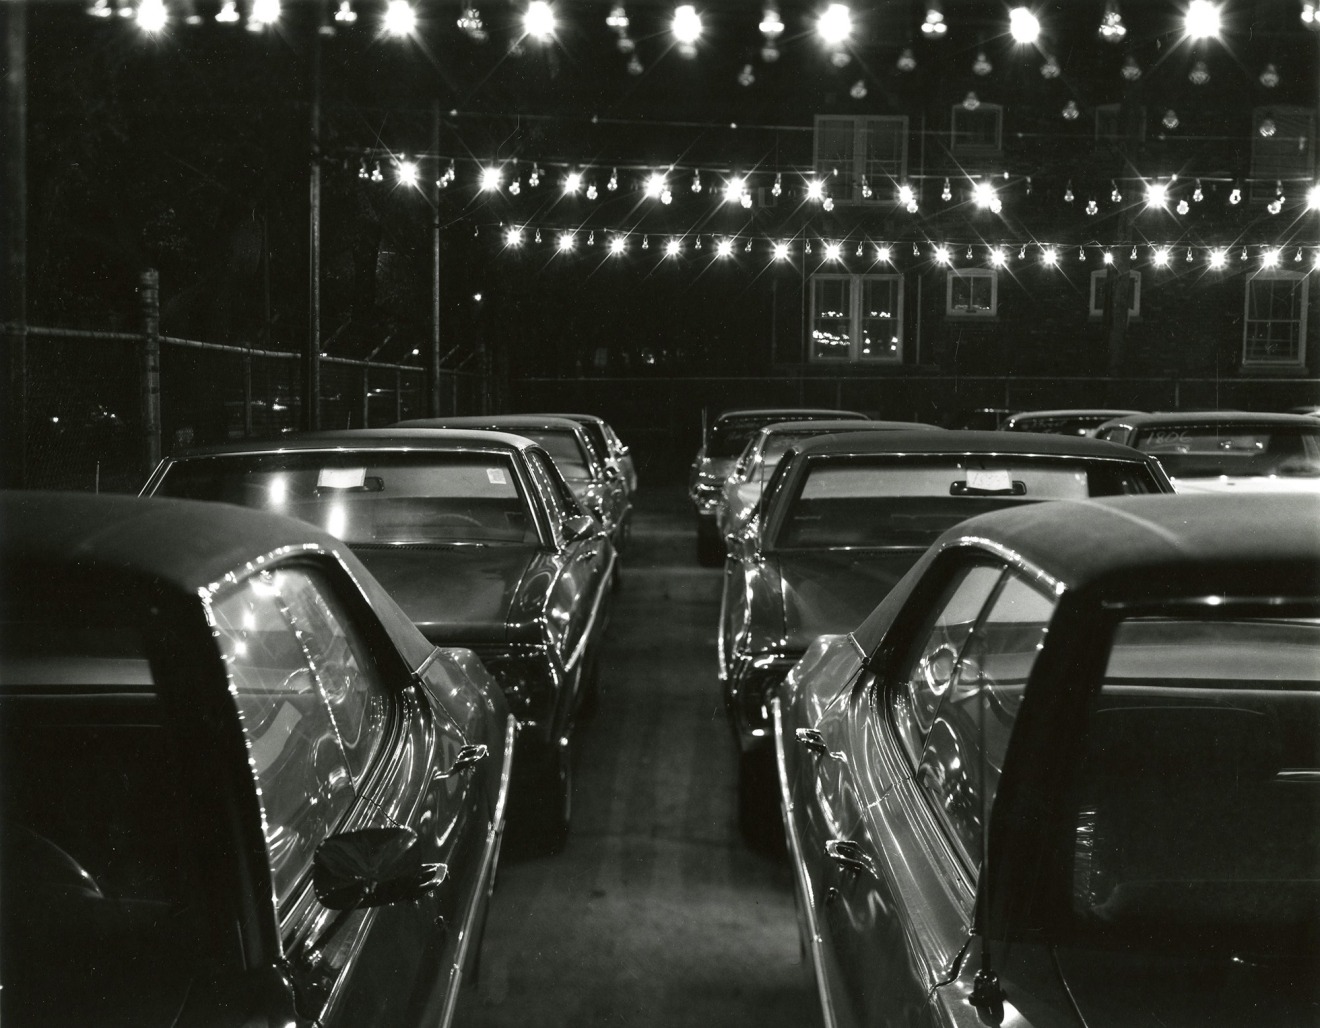 Car Lot, Chicago, IL, c. 1966-71